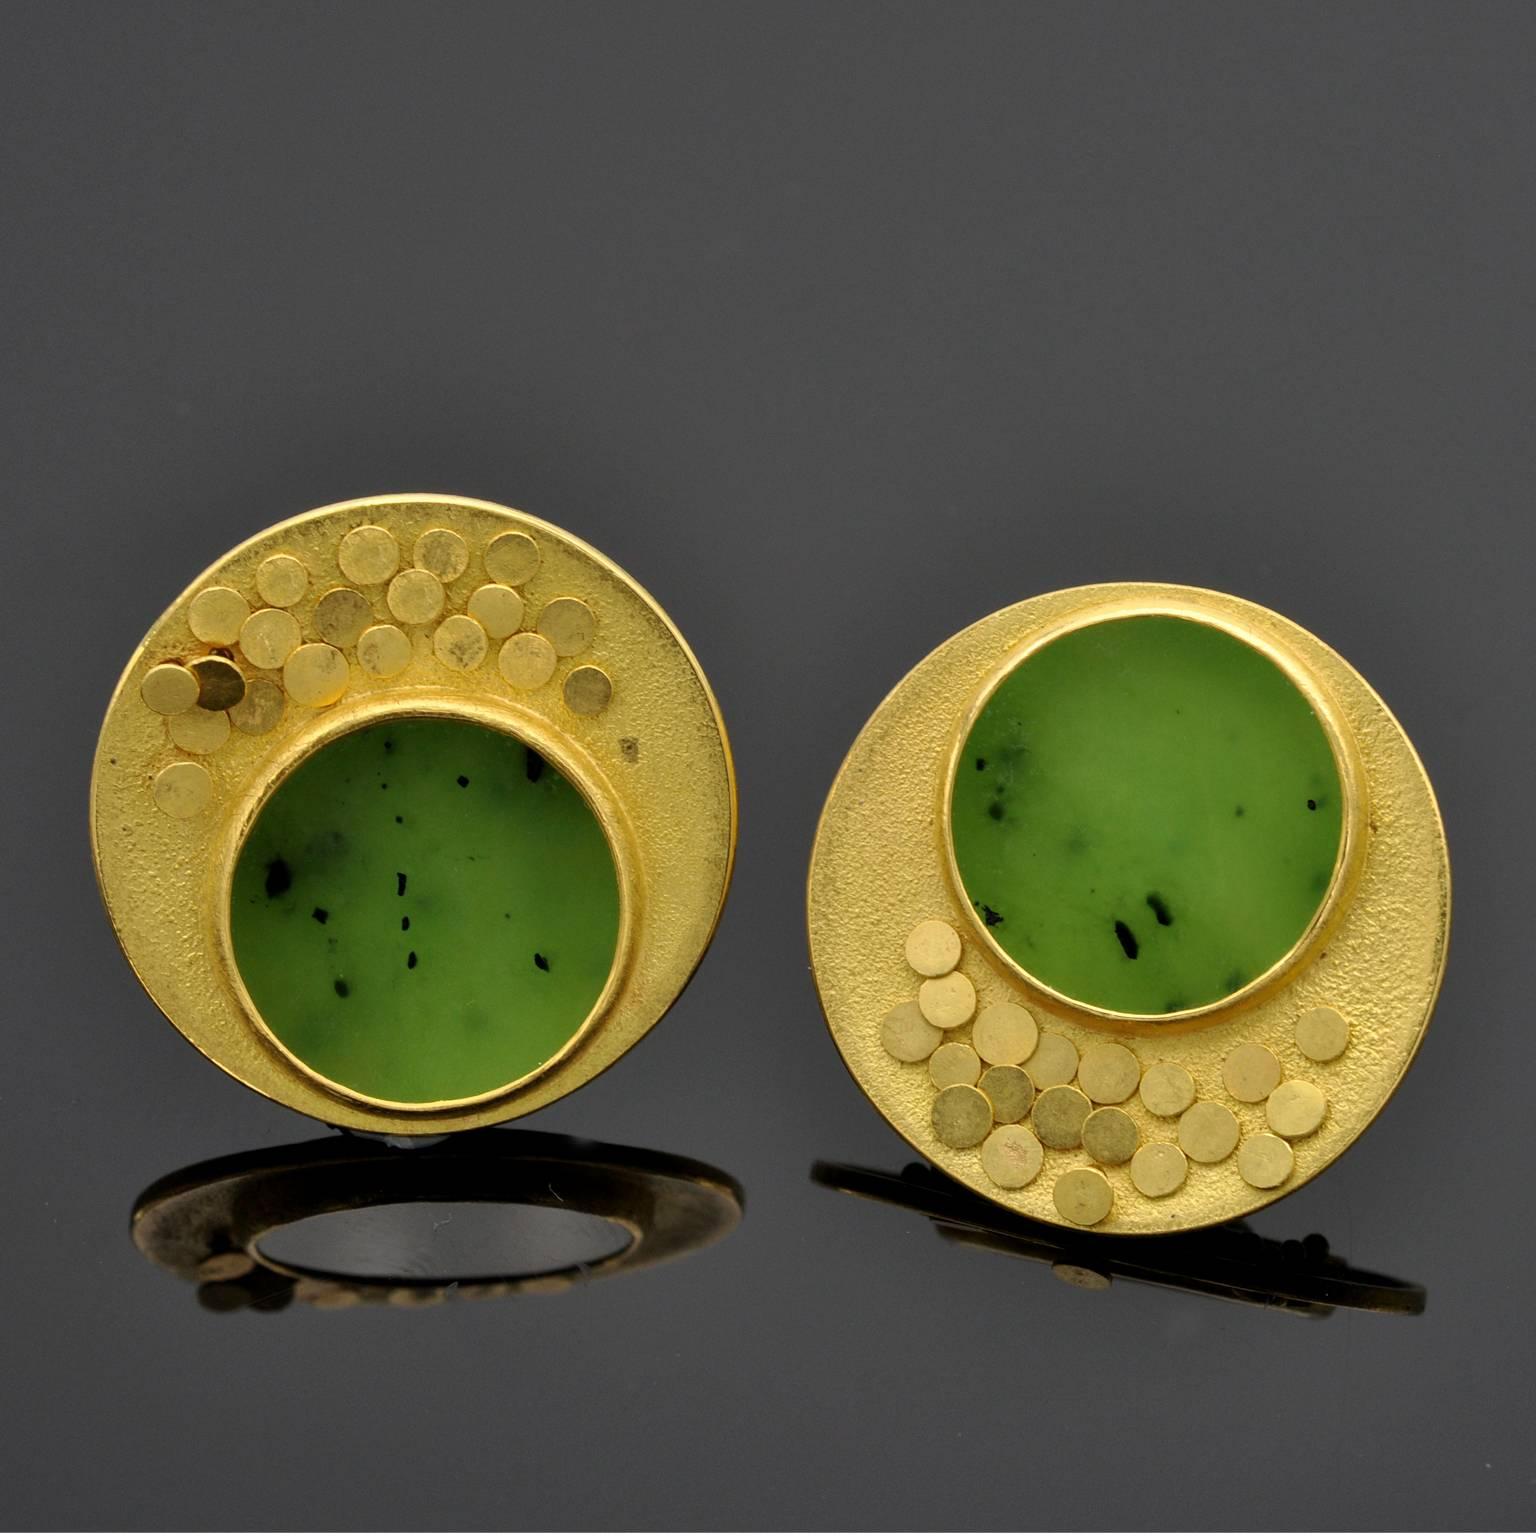  Moderne Ohrringe mit ethnischen Einflüssen machen es zu einem zeitlosen Stück, das man gerne trägt   mit Vergnügen bei vielen Gelegenheiten. Eine runde grüne Jade, eingefasst in strukturiertes Gold mit zwanzig schuppenartigen, beweglichen Scheiben.